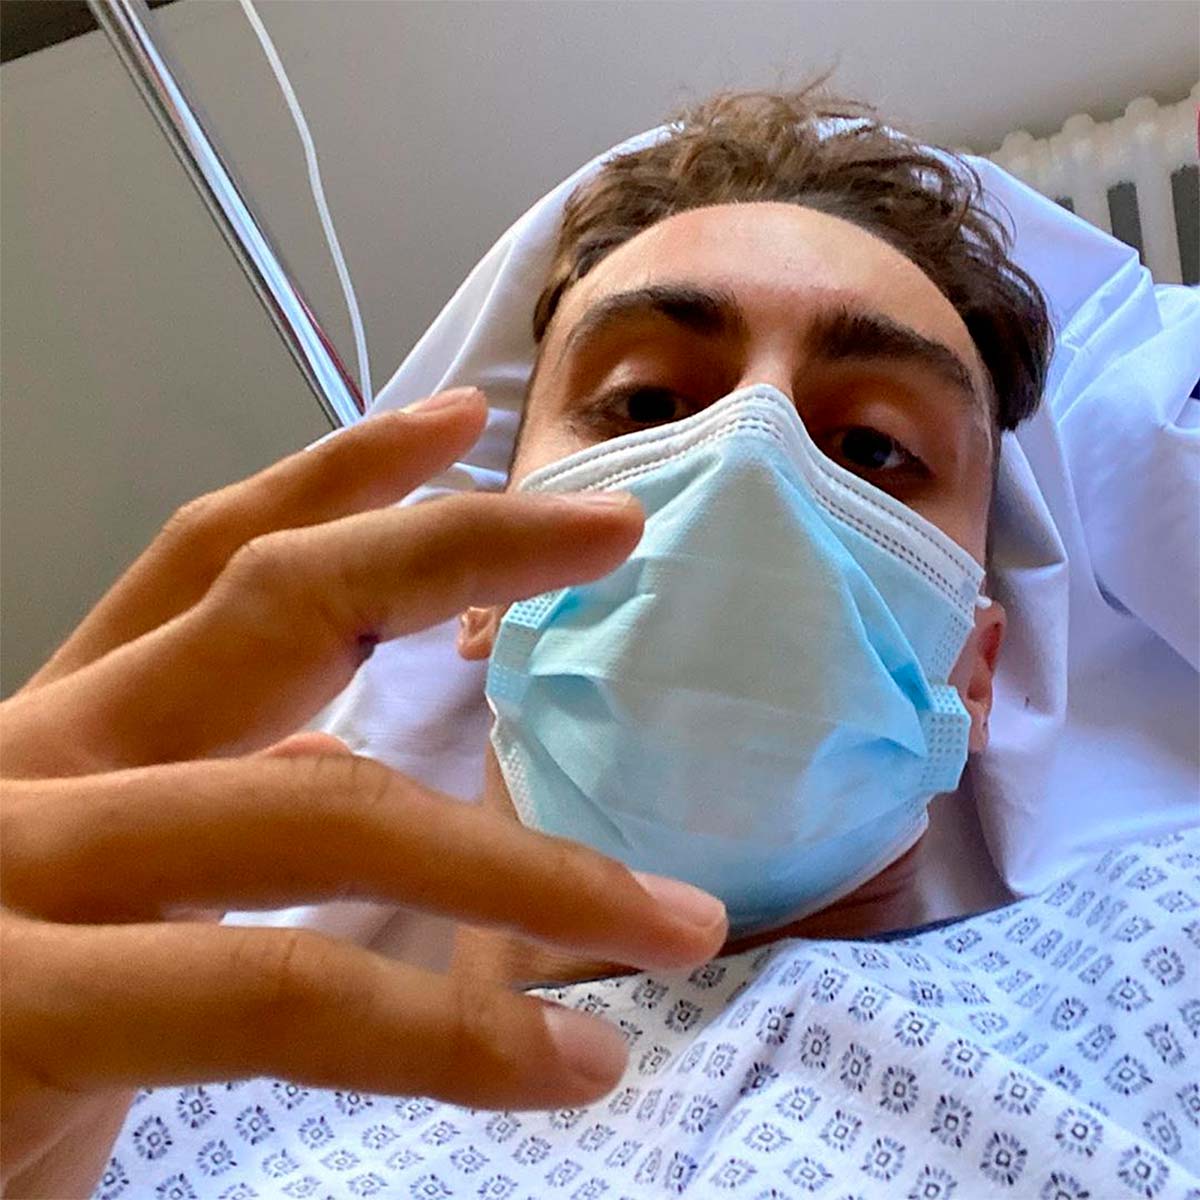 Amaury Pierron se lesiona gravemente en el Campeonato de Francia de Descenso